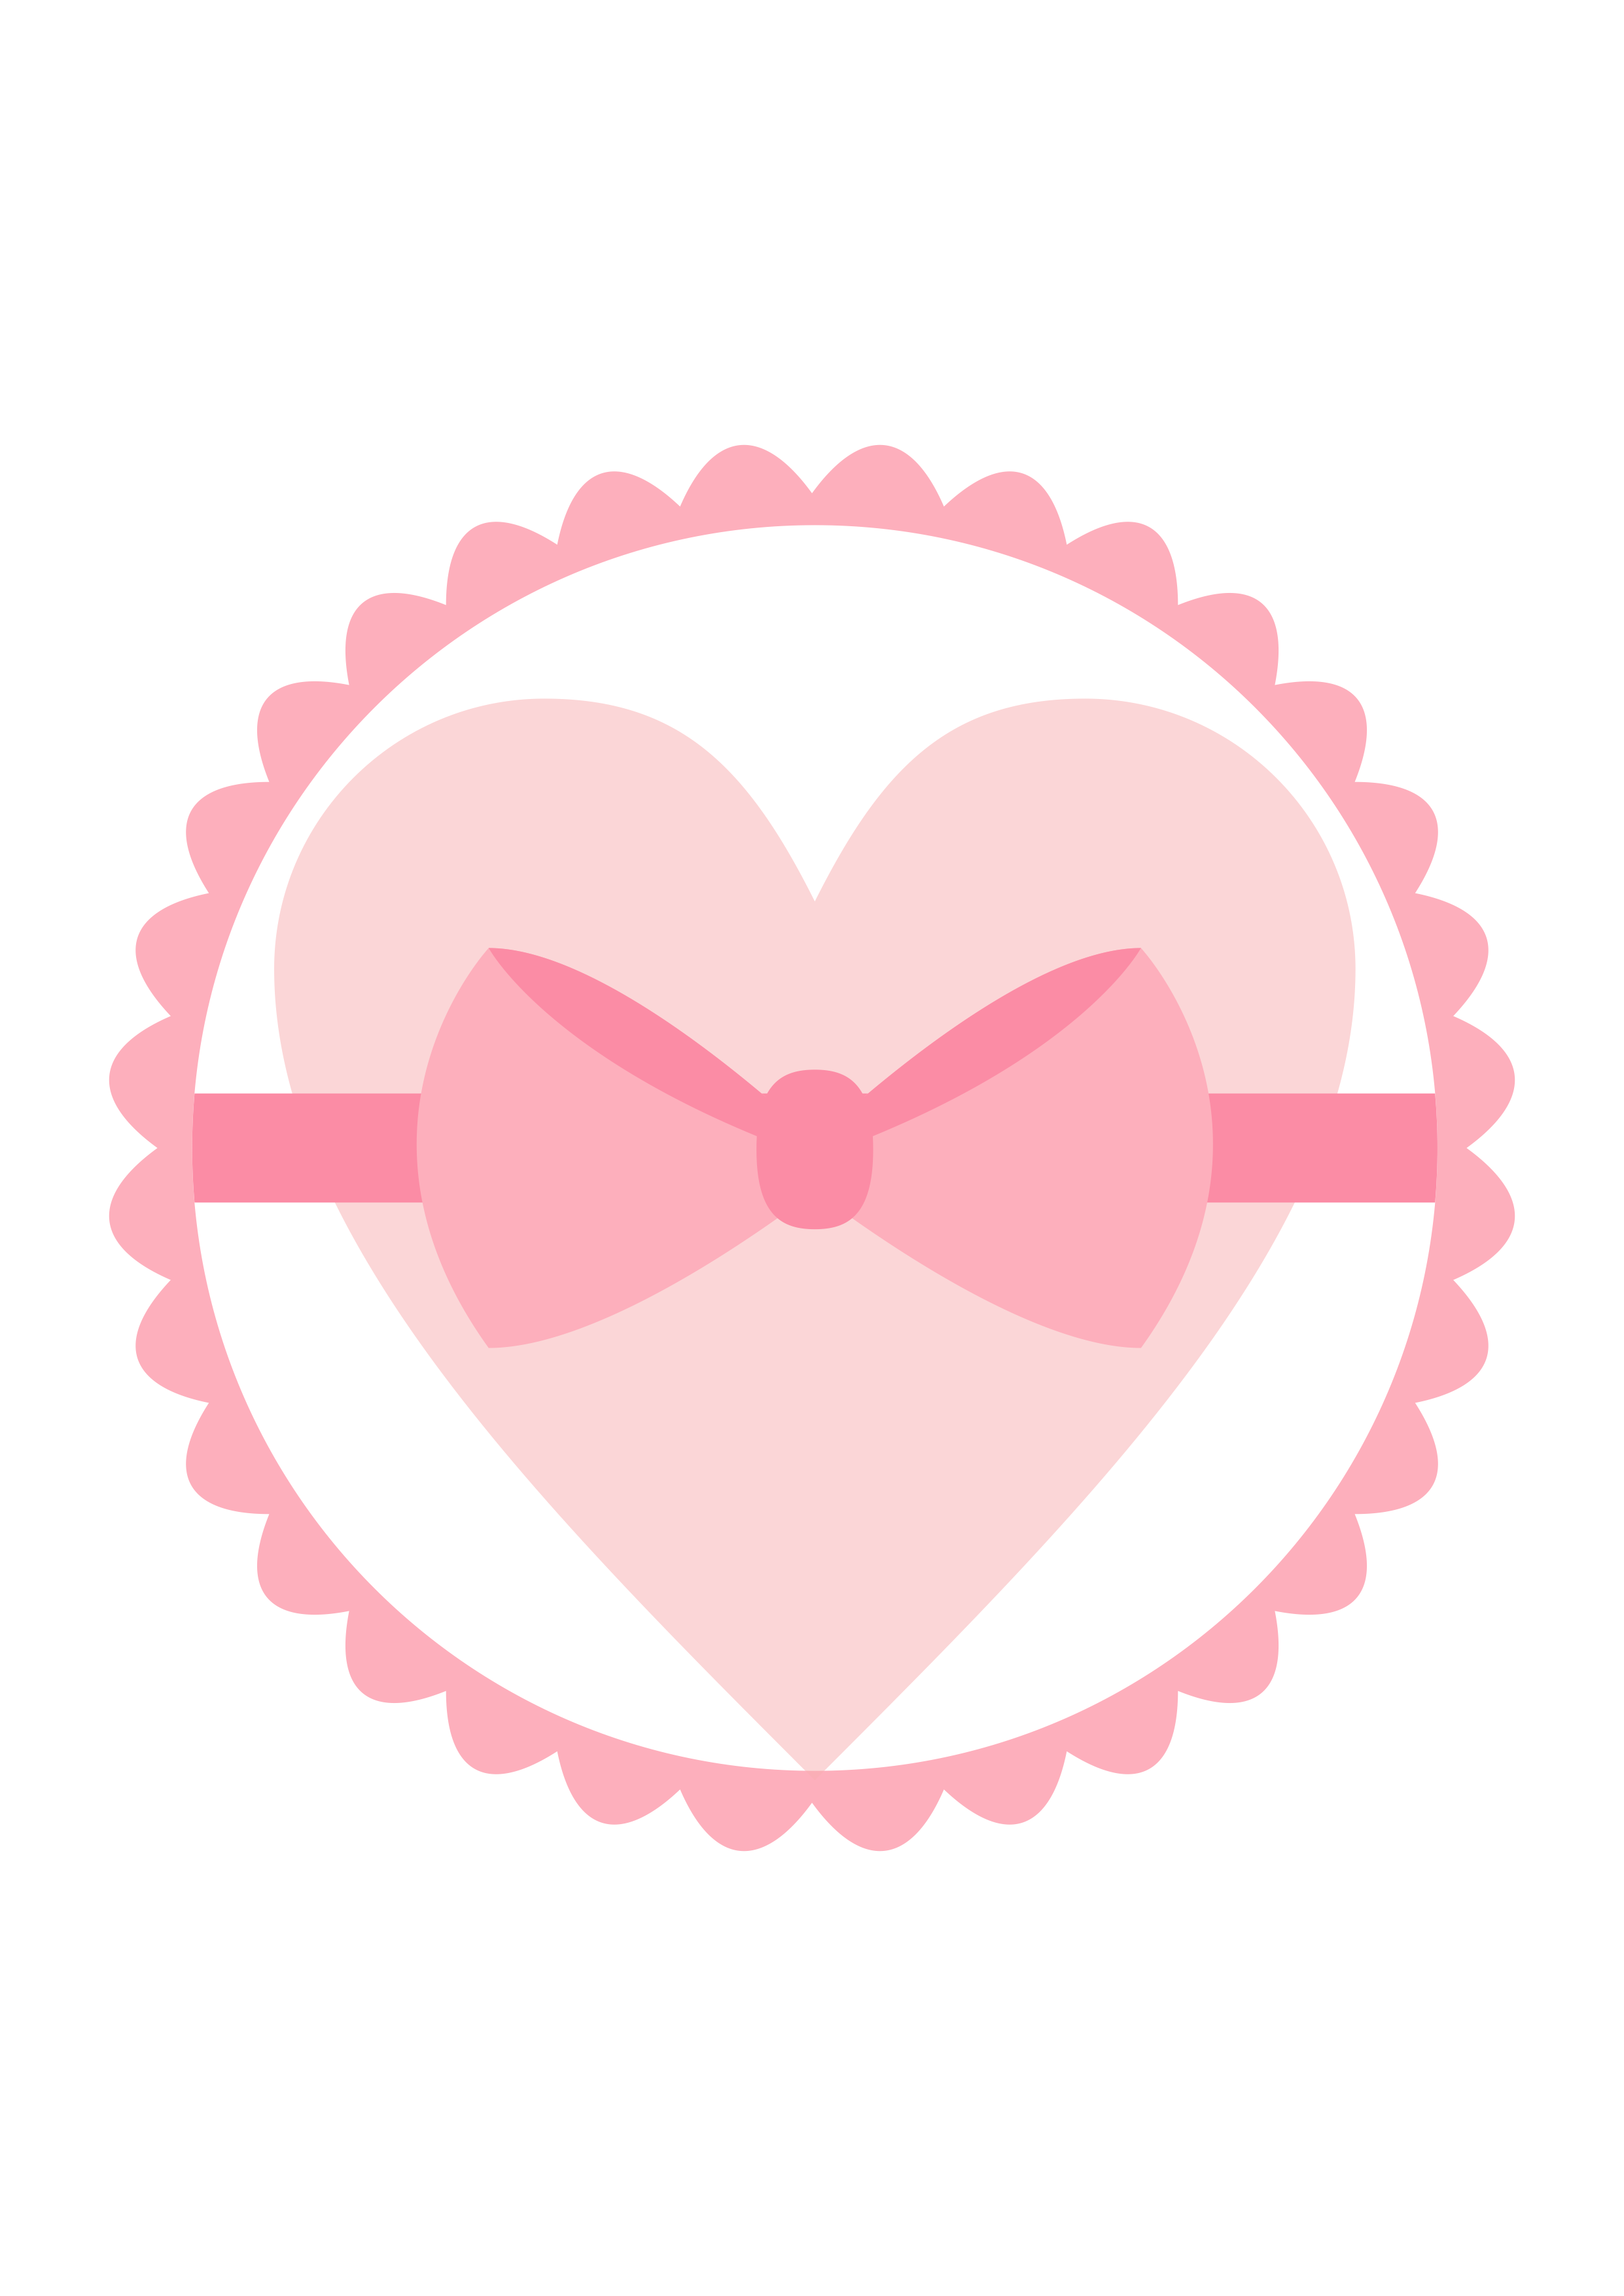 Circulo rosa com coração para decoração png